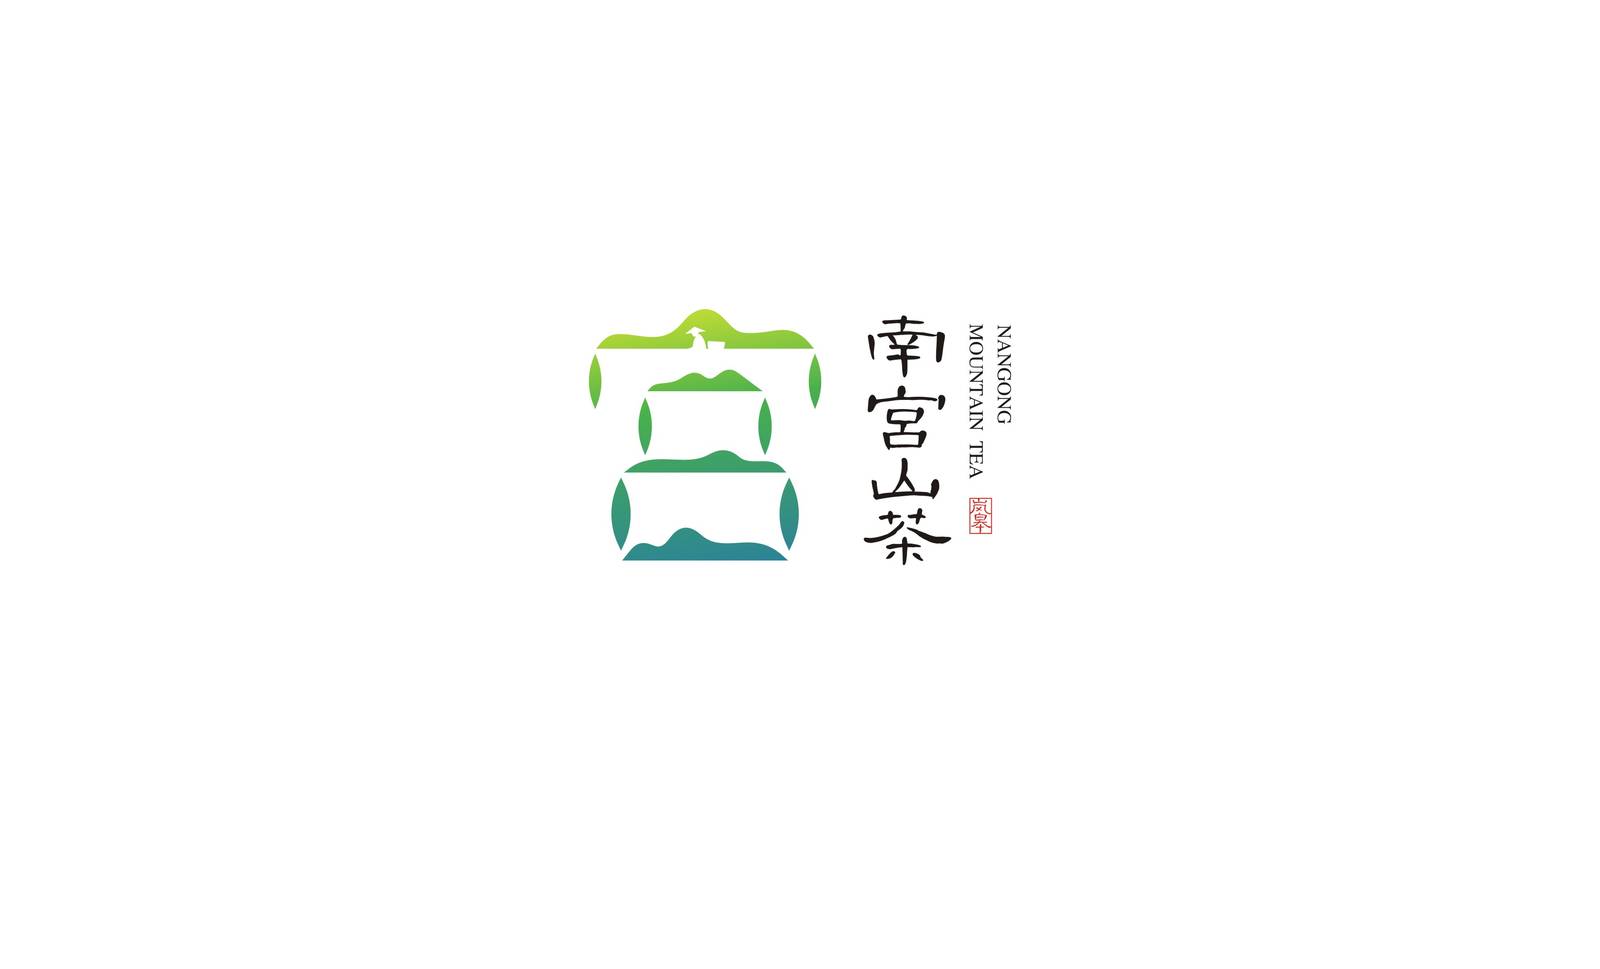 南宫山茶区域农产品茶叶类品牌标志LOGO-第9张